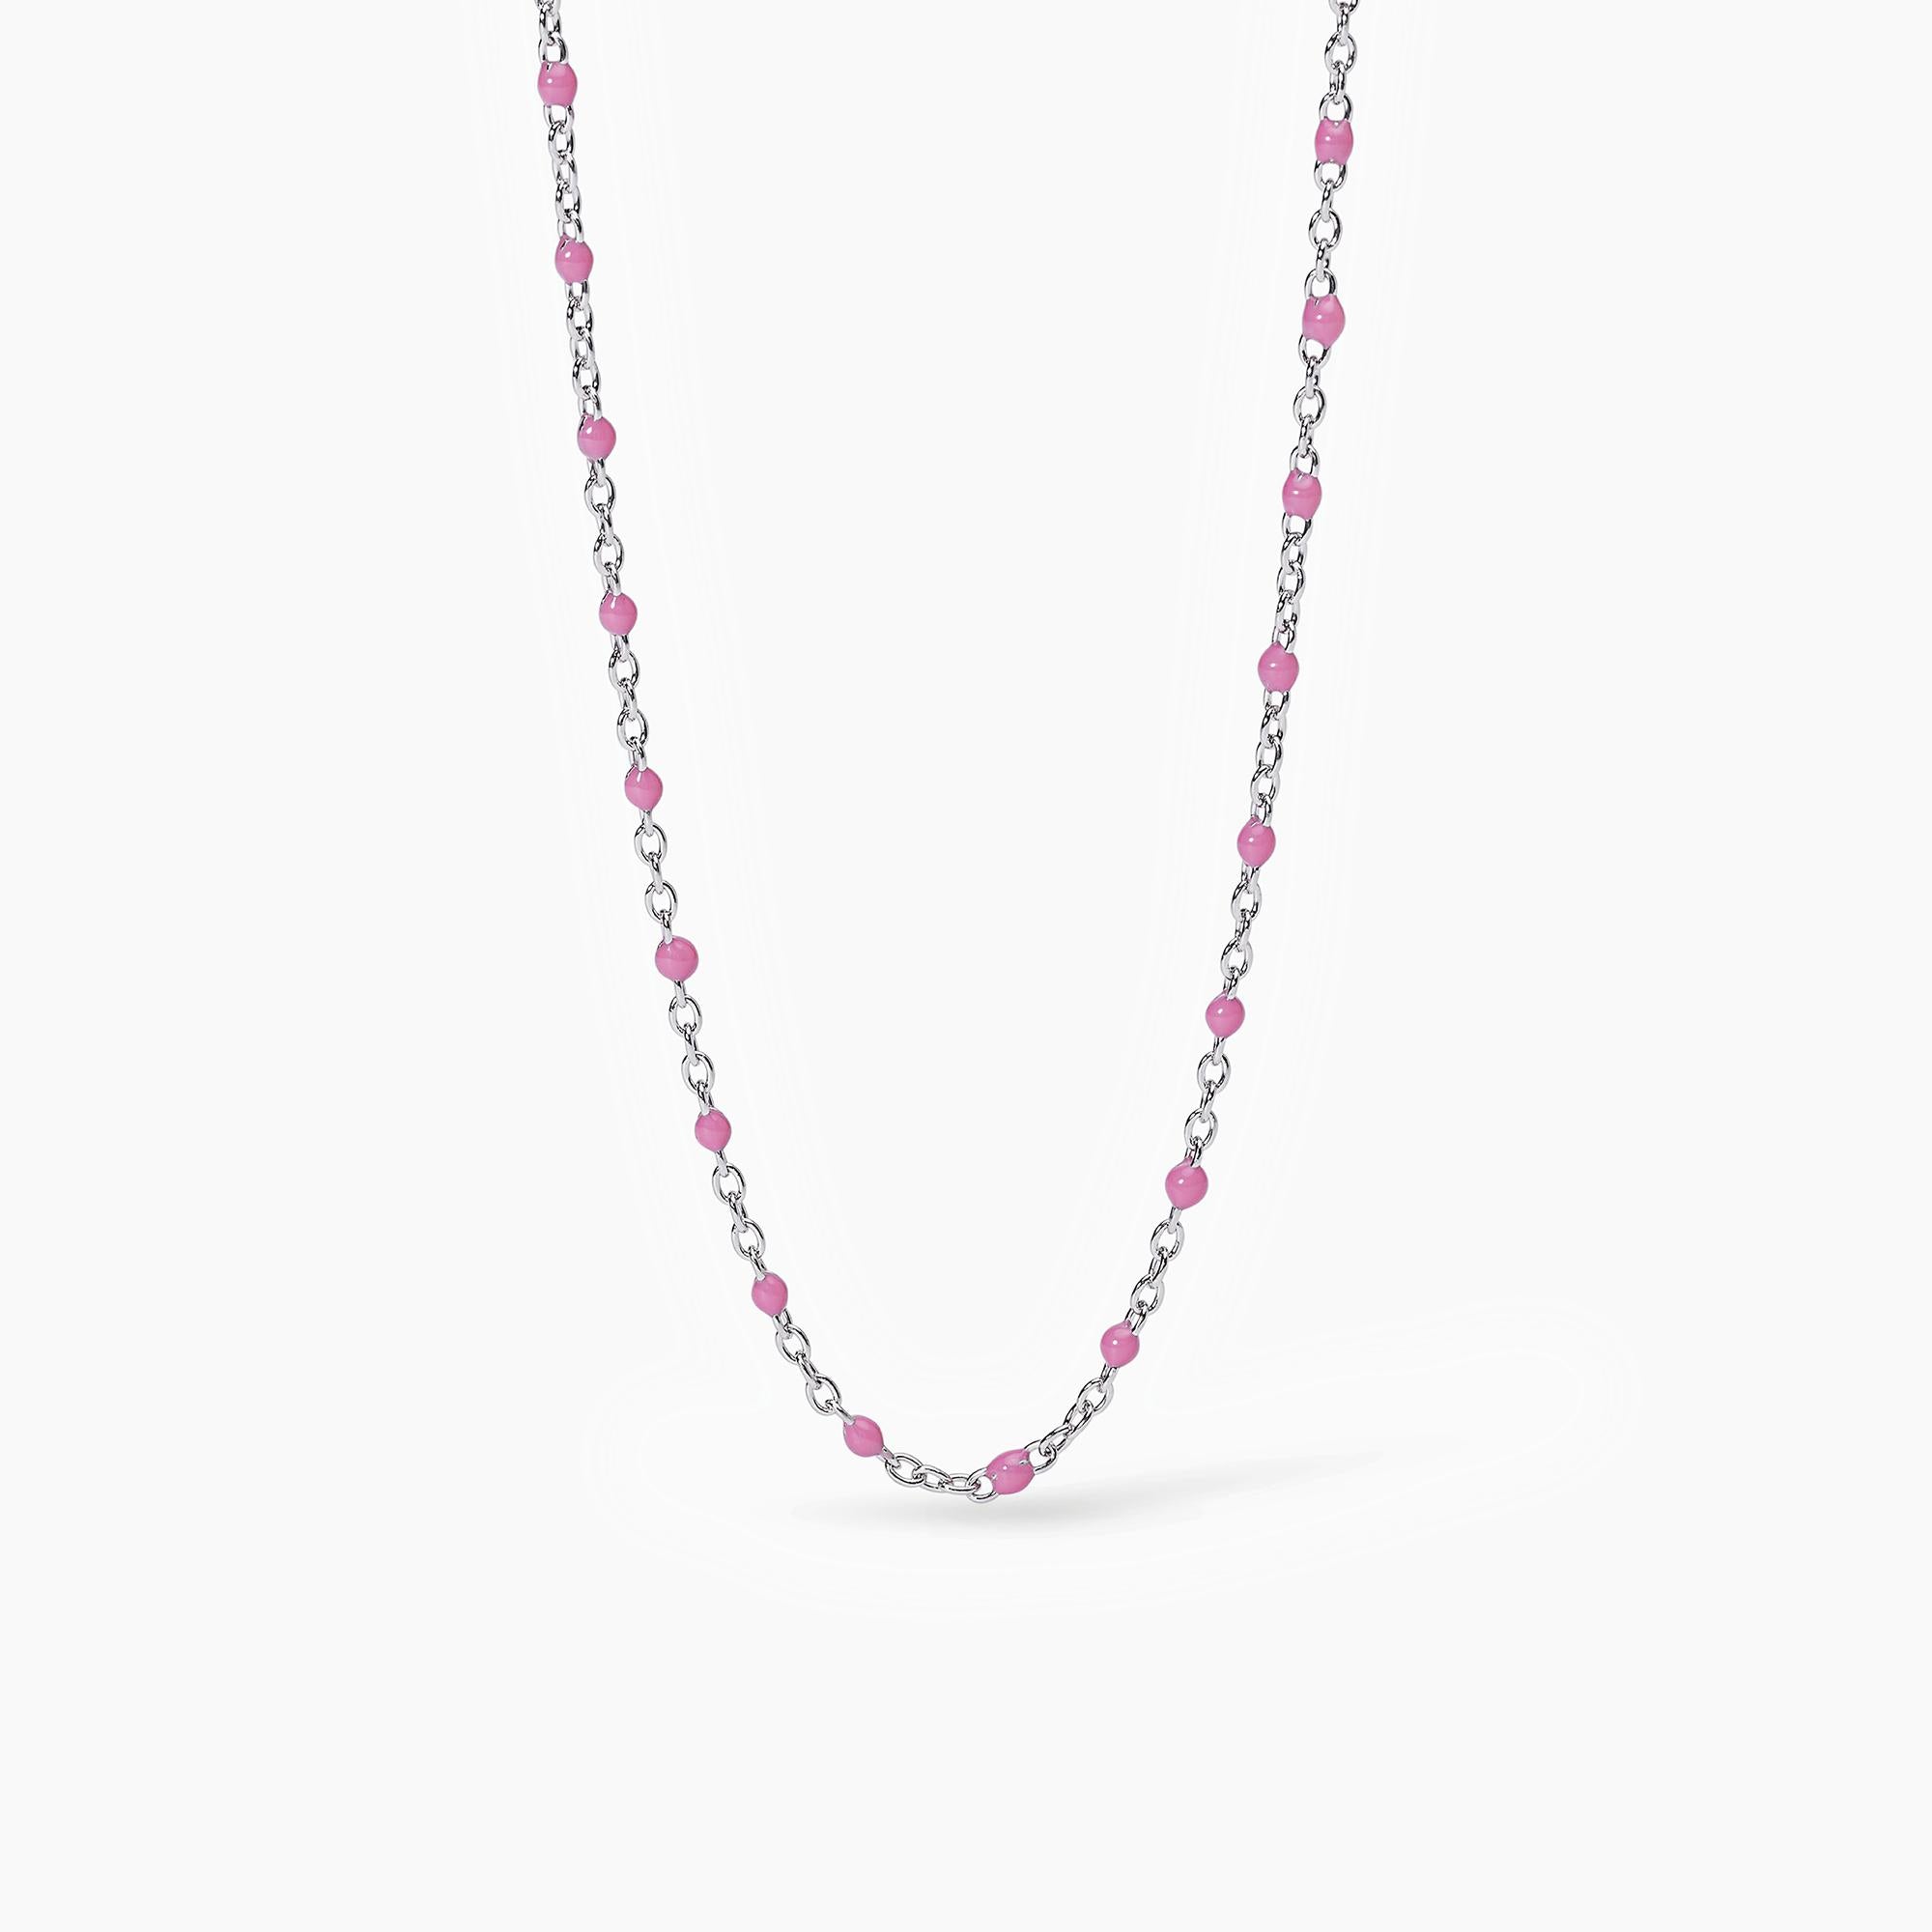 Mabina Junior - Girocollo in argento con inserti smaltati rosa CANDY - 553557